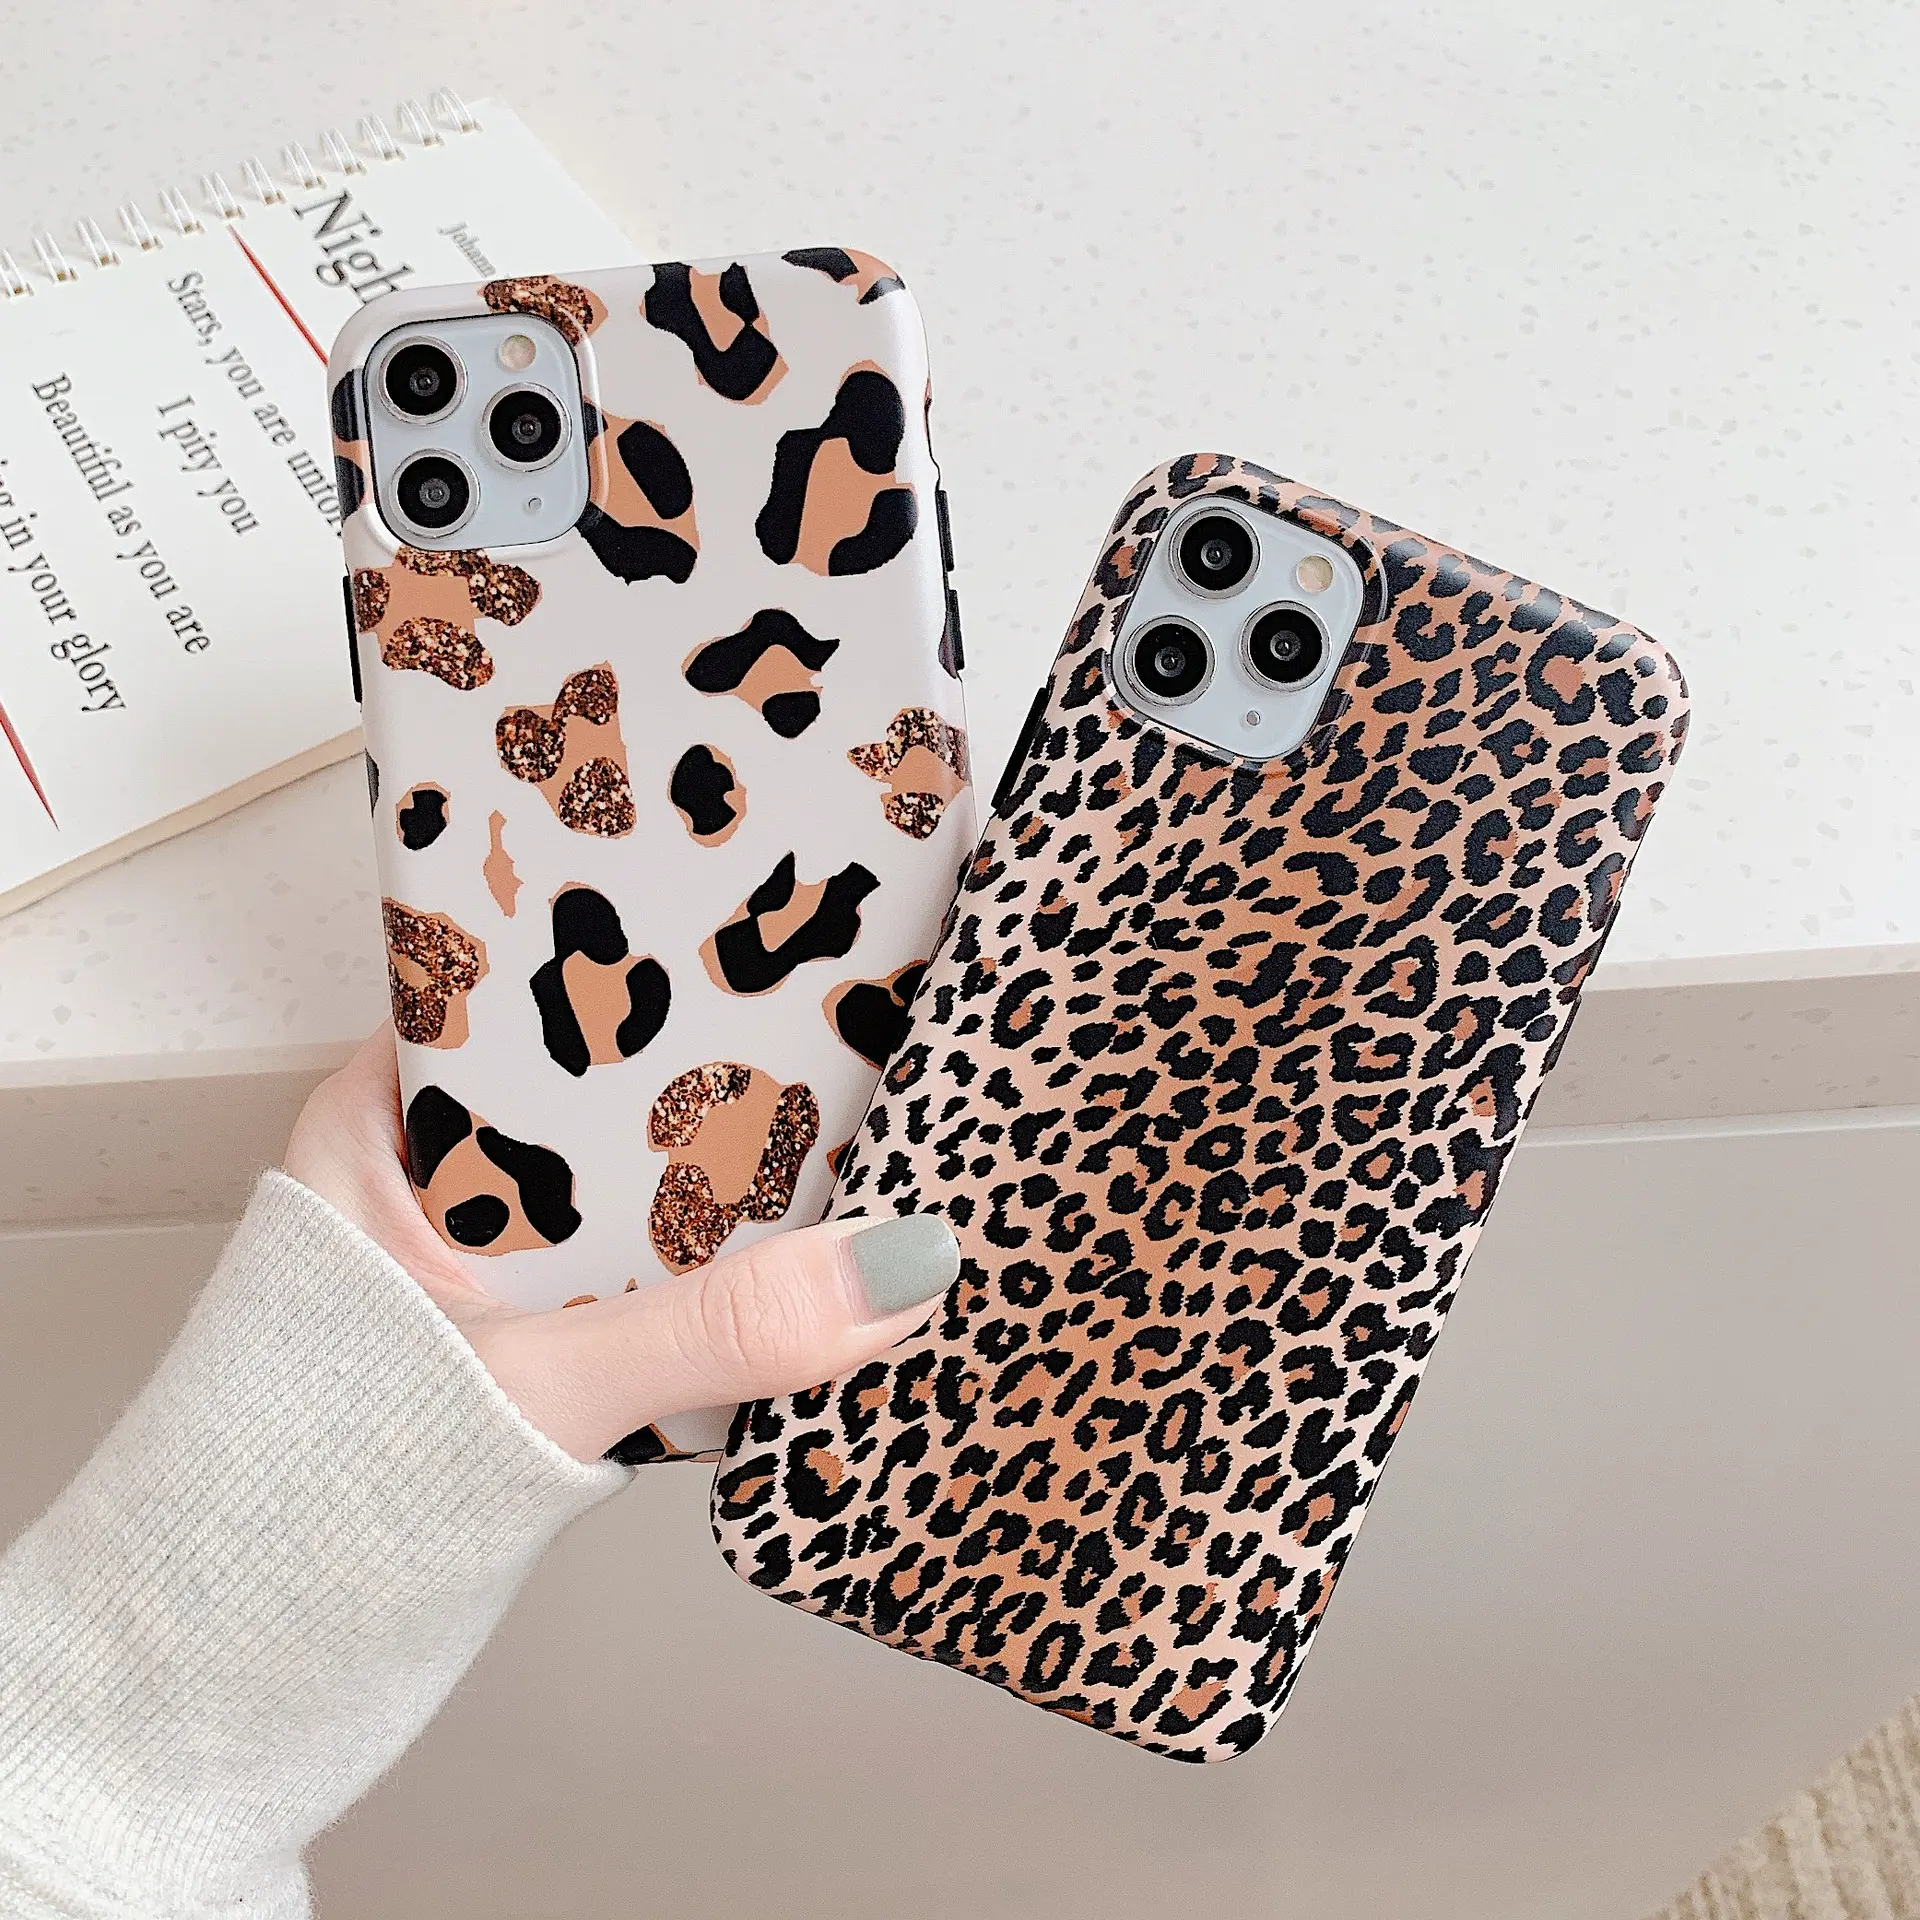 2020 Модный чехол для телефона iPhone 11 12 Pro XS Max XR X 6 6S 7 8 Plus роскошные сумки для мобильных телефонов с леопардовым принтом